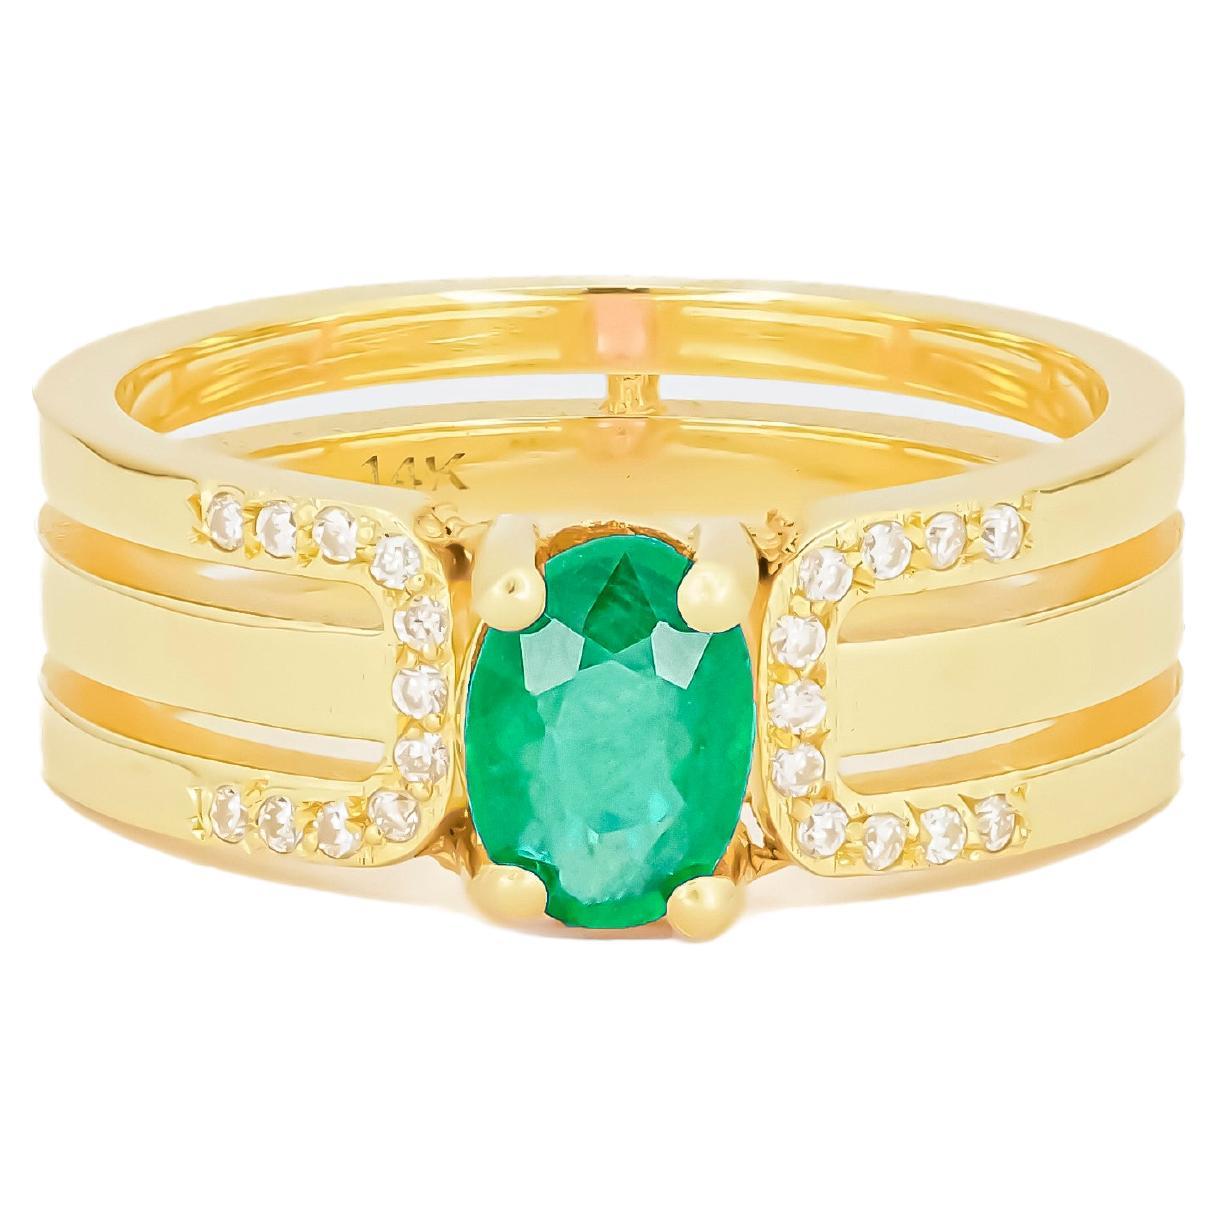 Men's emerald 14k gold ring.